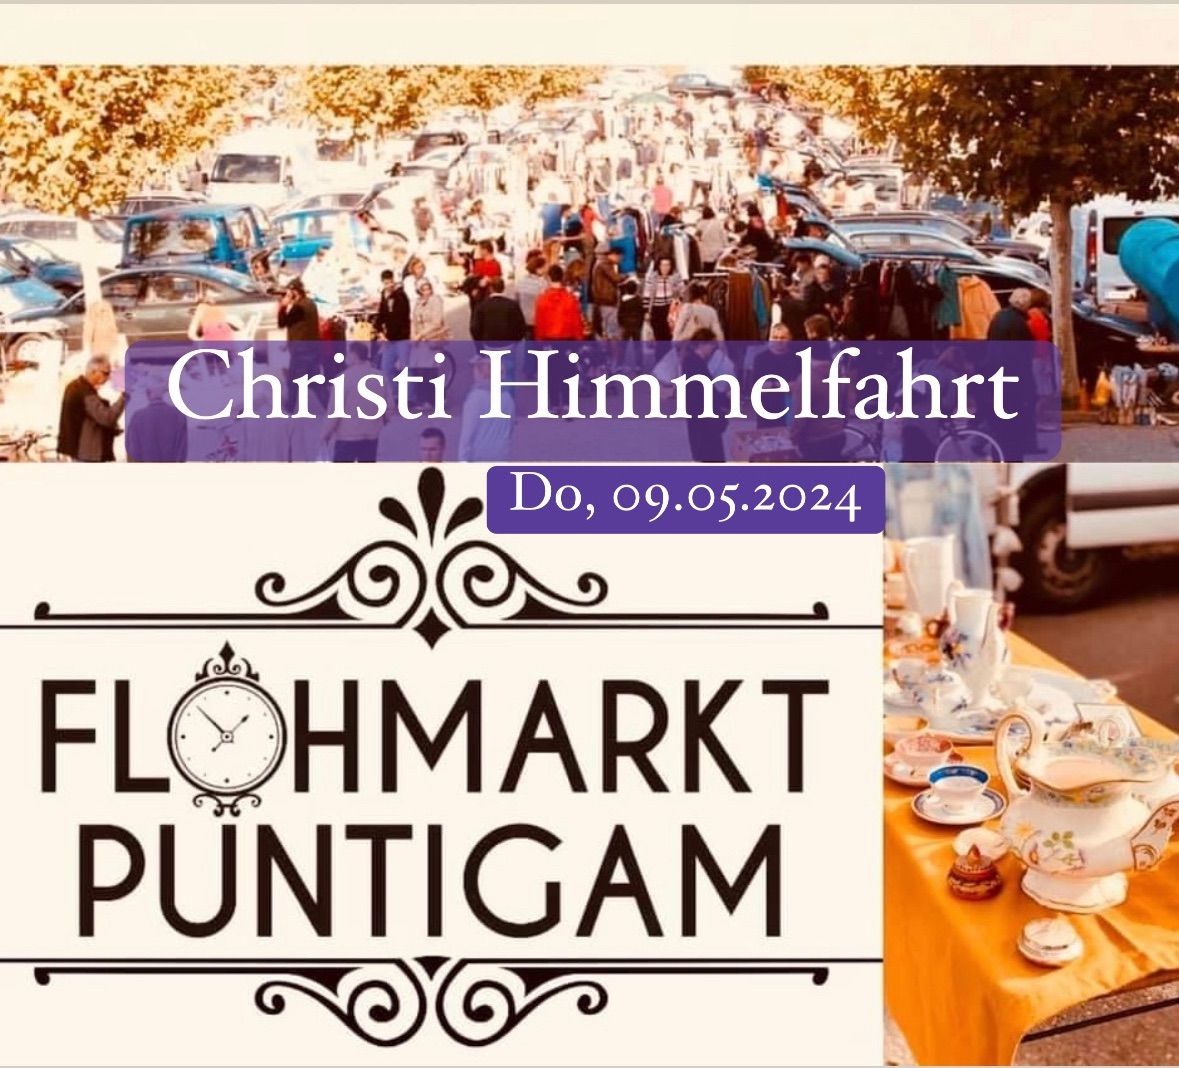 Flohmarkt Puntigam \/ CINEPLEXX Graz